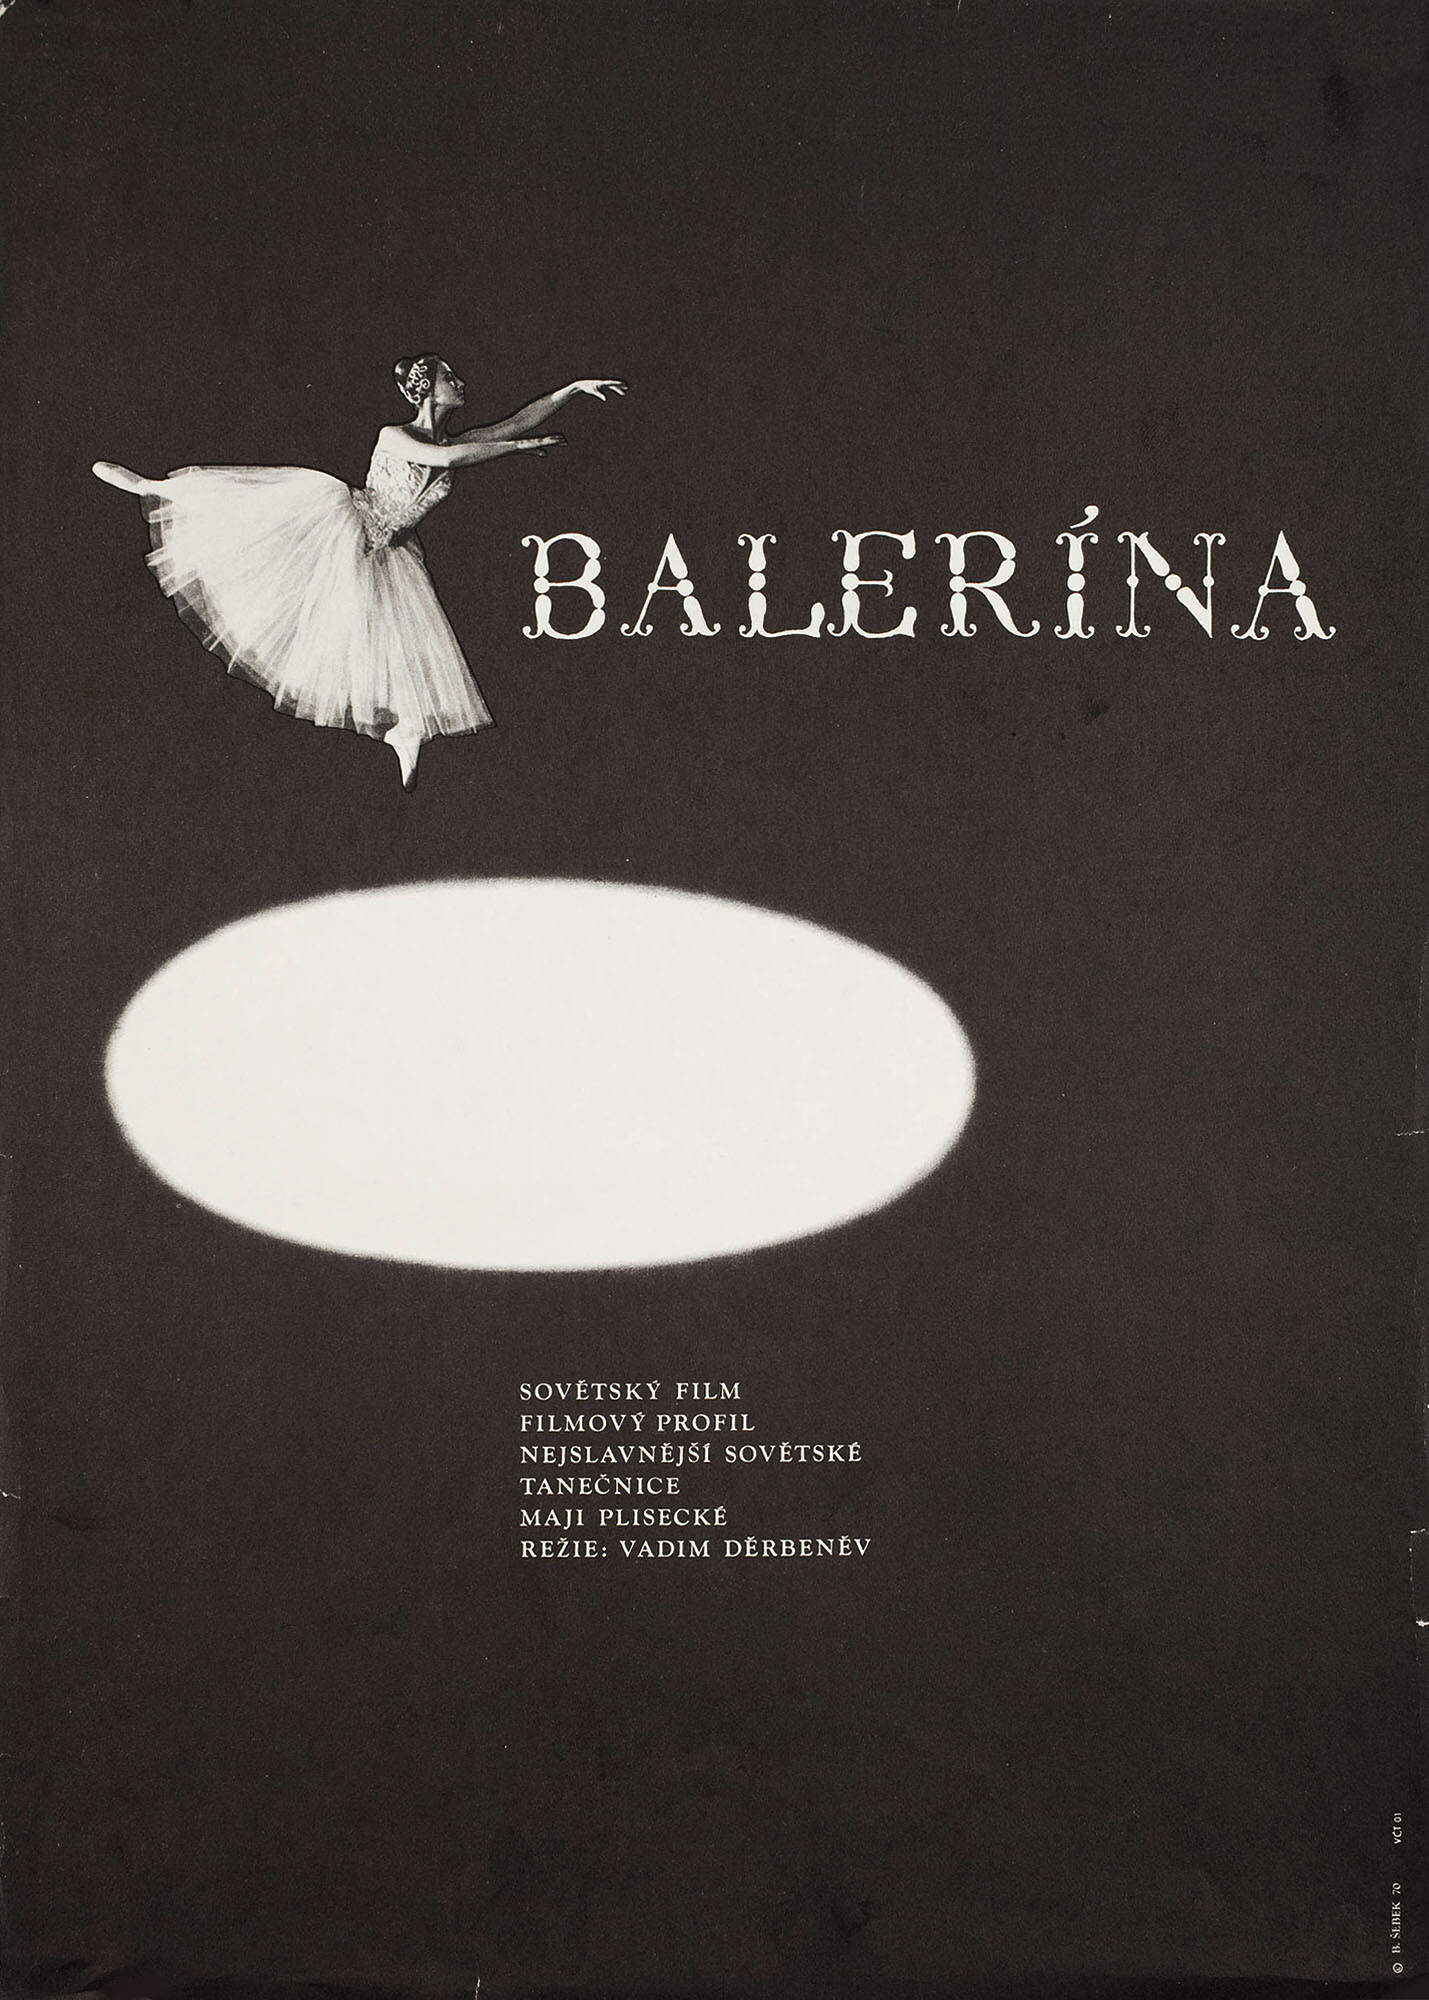 Балерина (режиссёр Вадим Дербенёв, 1970), чехословацкий постер к фильму, автор Бретислав Себек, 1970 год